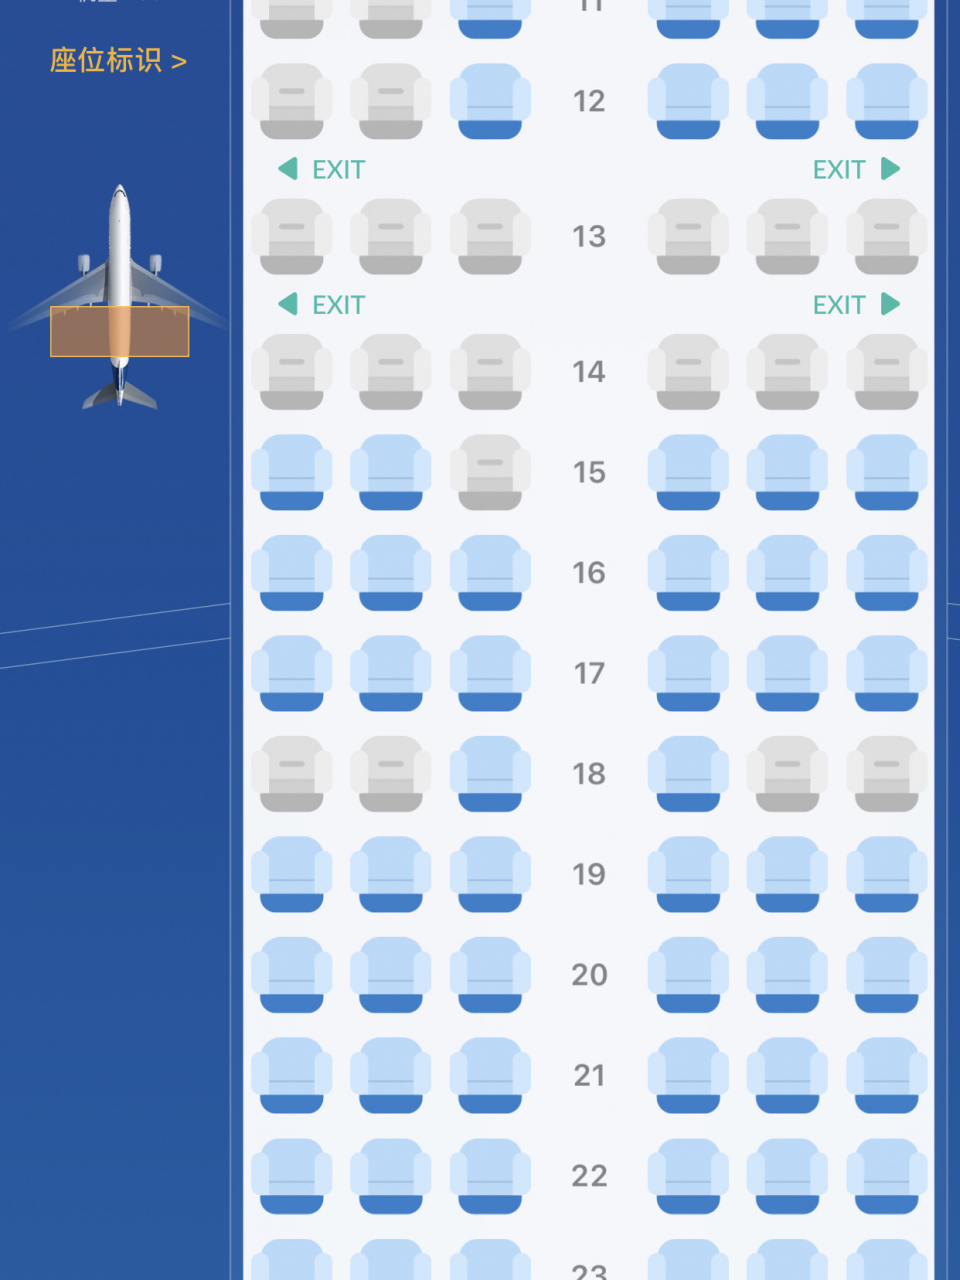 737客机最多有多少座位图片